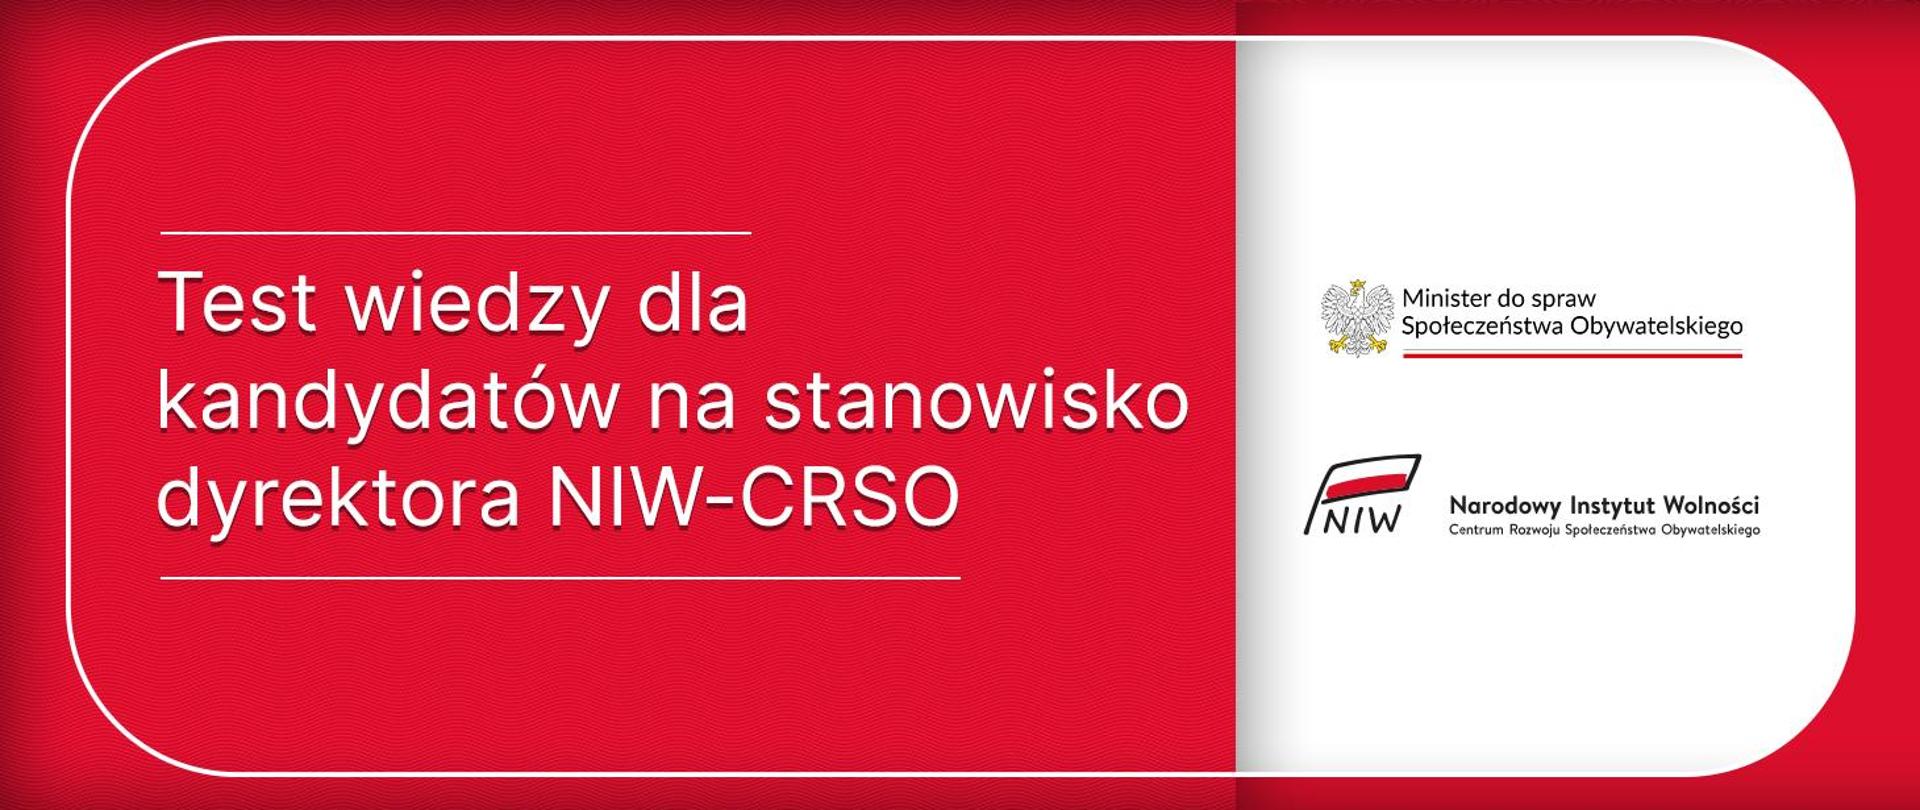 test wiedzy dla kandydatów na dyrektora NIW-CRSO